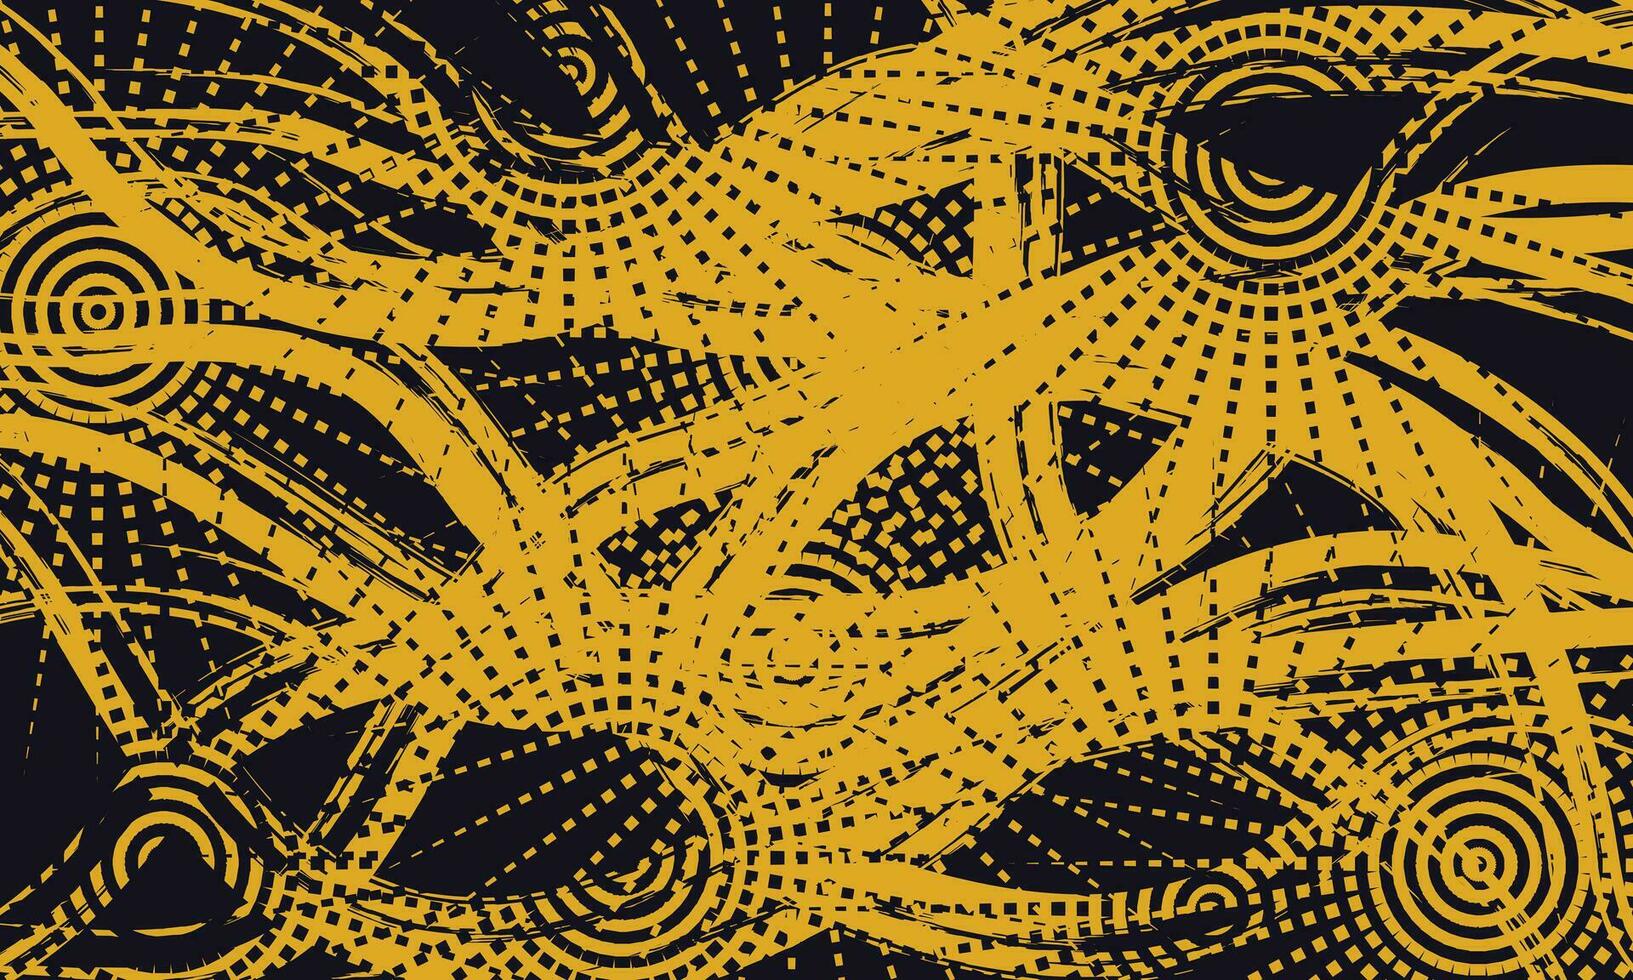 resumen sucio amarillo y negro grunge textura antecedentes con trama de semitonos estilo, vector grunge antecedentes negro y amarillo color